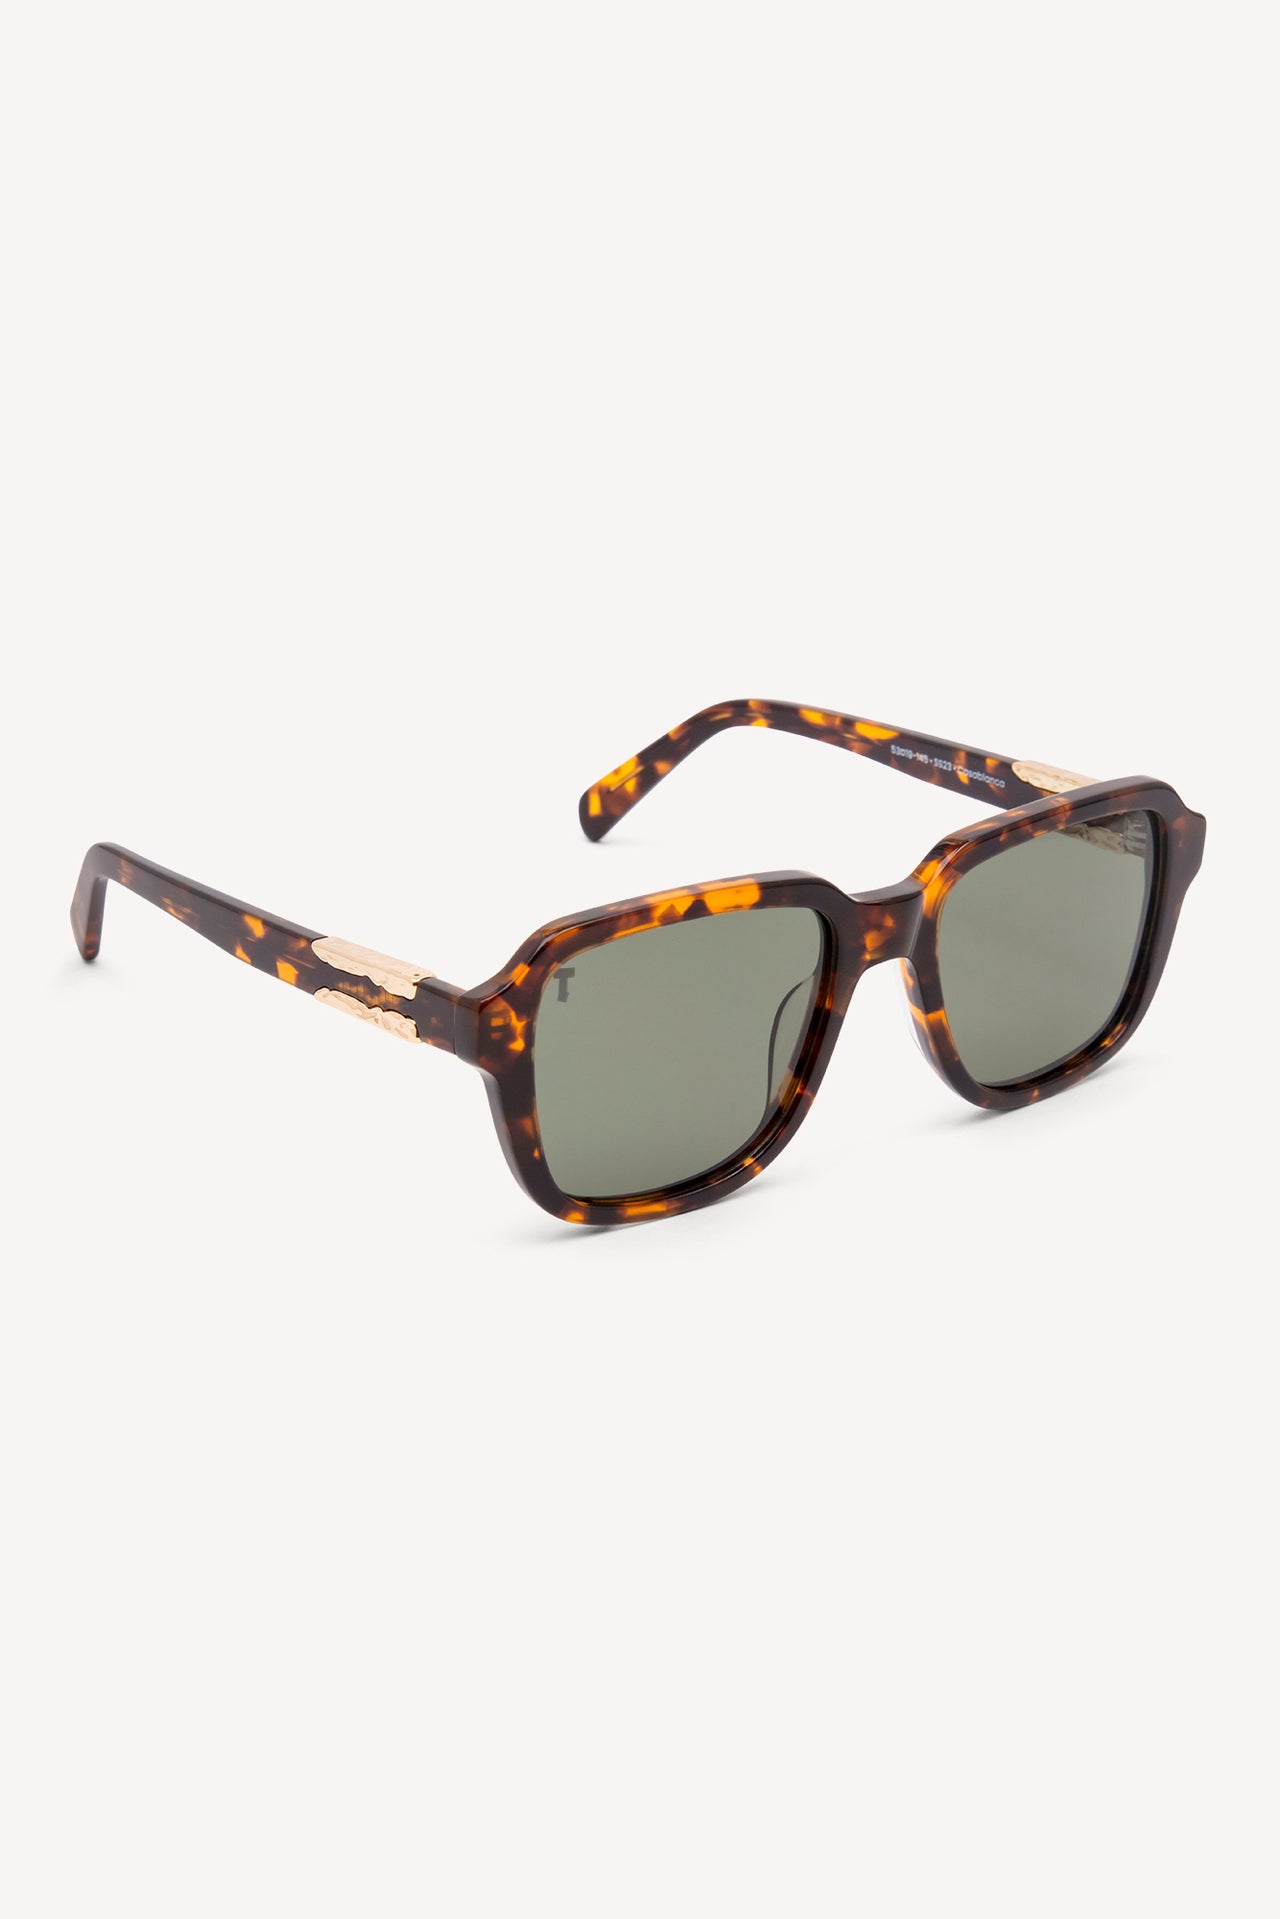 TOATIE Casablanca Square Sunglasses TORTOISE/GREEN